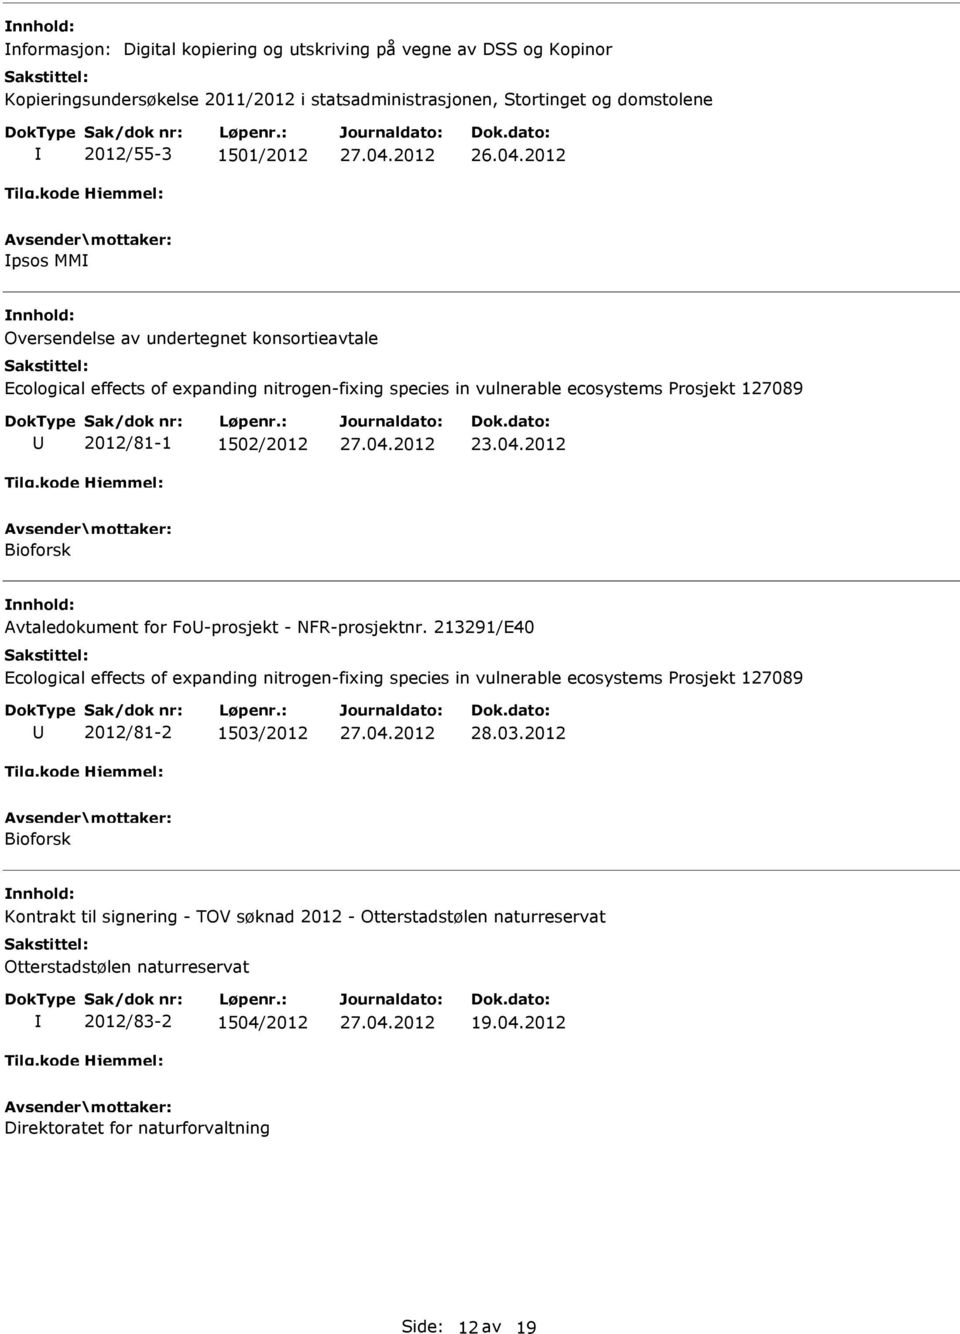 2012 Bioforsk Avtaledokument for Fo-prosjekt - NFR-prosjektnr.